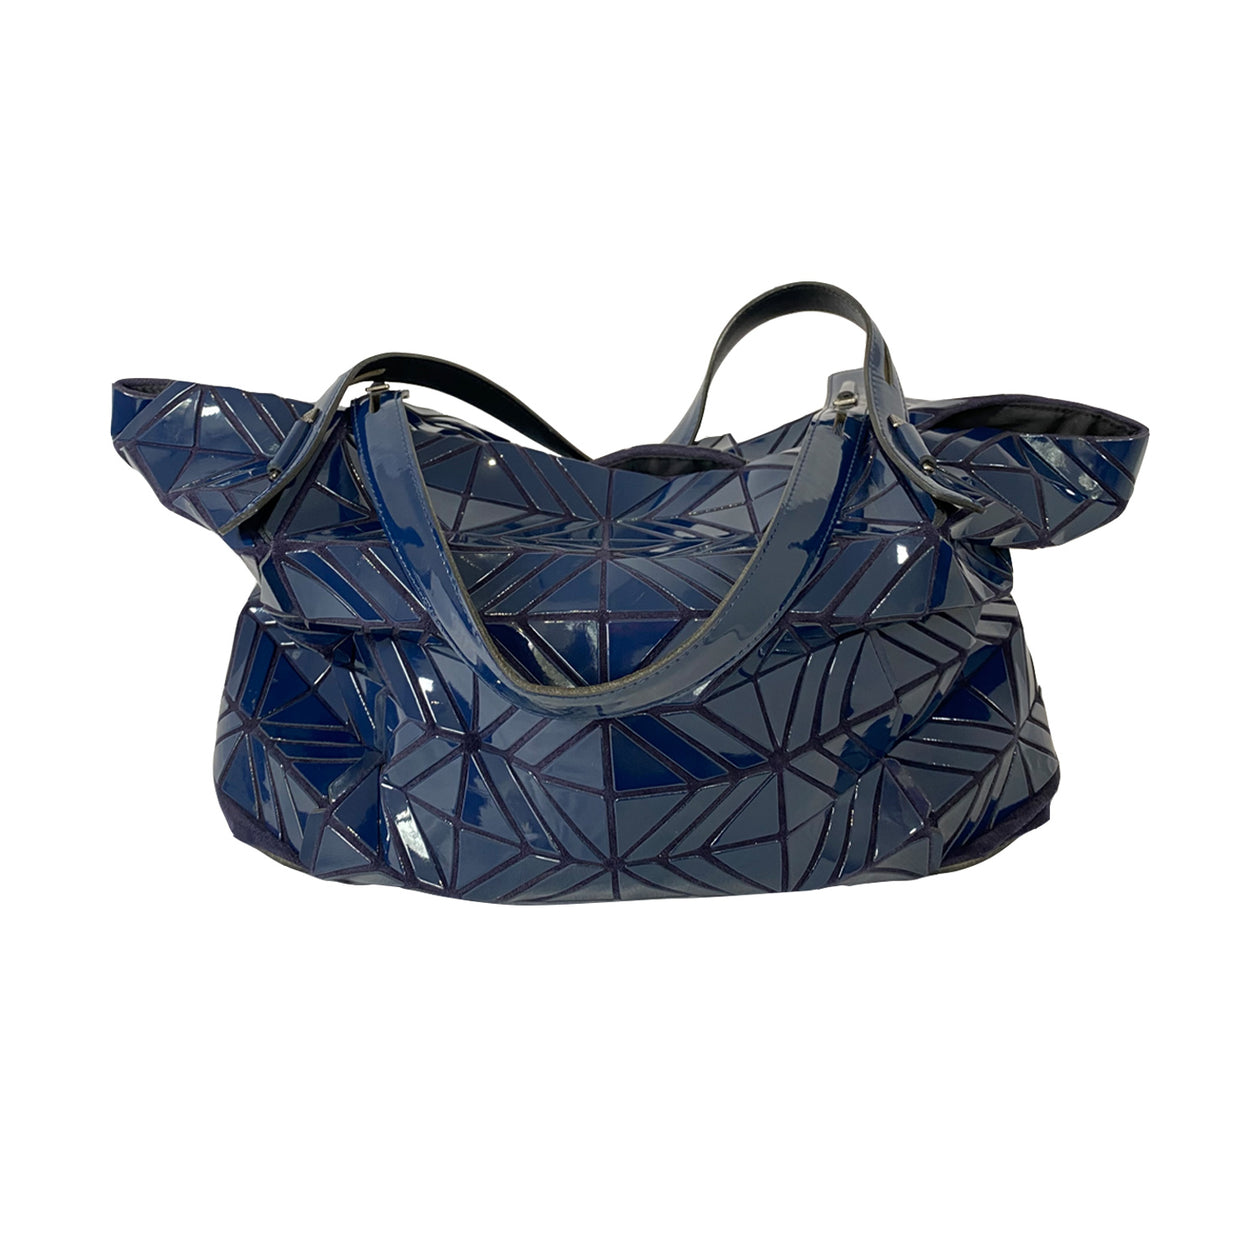 Women's 'loop' Shoulder Bag by Bao Bao Issey Miyake